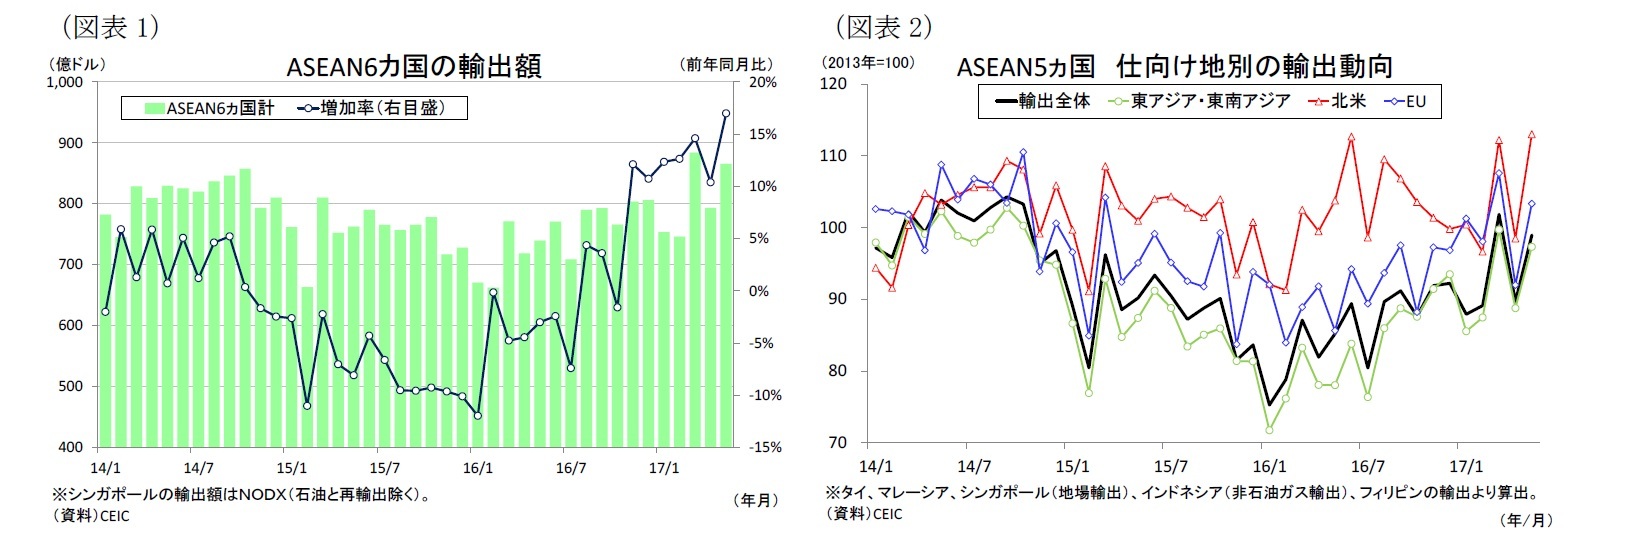 （図表1）ASEAN6カ国の輸出額/（図表2）ASEAN5ヵ国仕向け地別の輸出動向